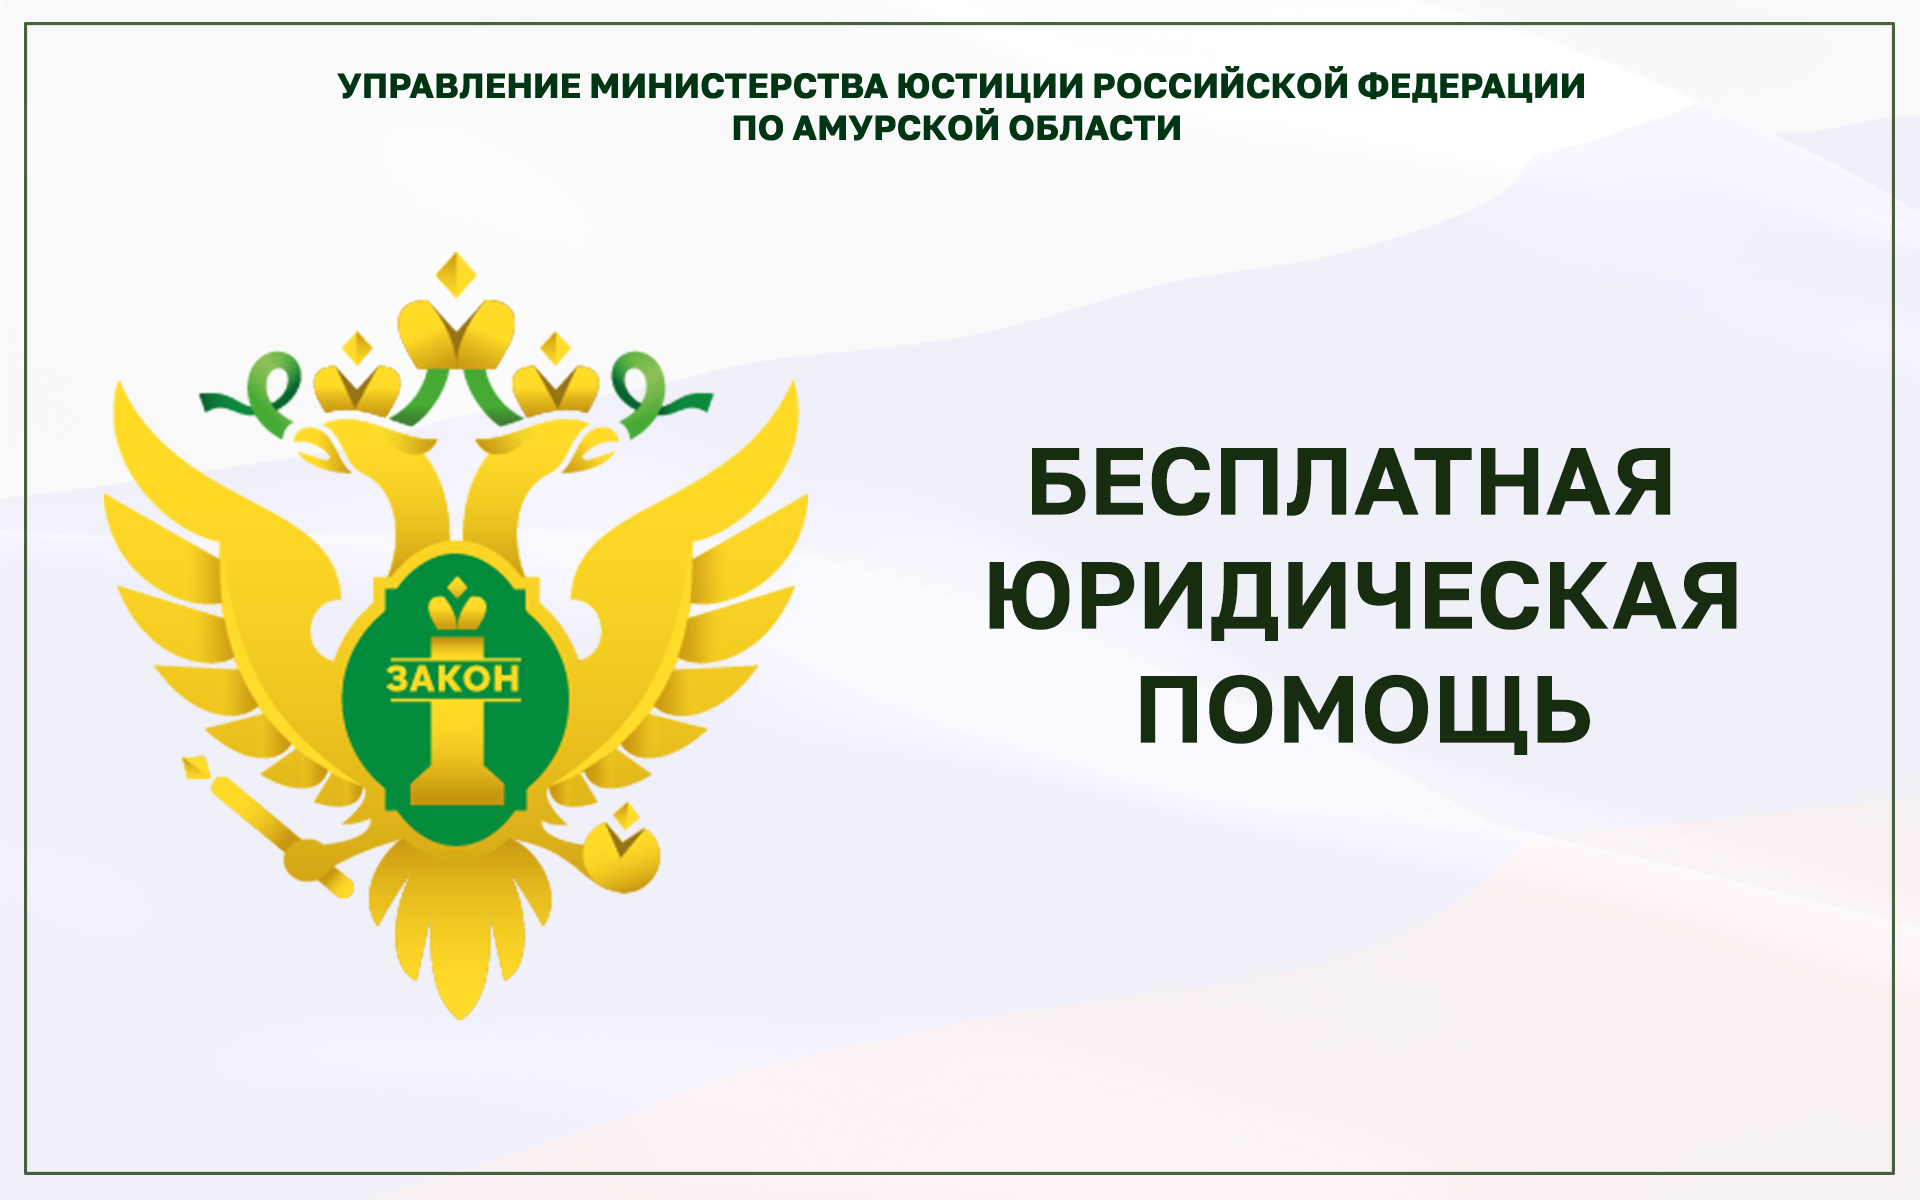 Опрос граждан по вопросу доступности бесплатной юридической помощи в Амурской области